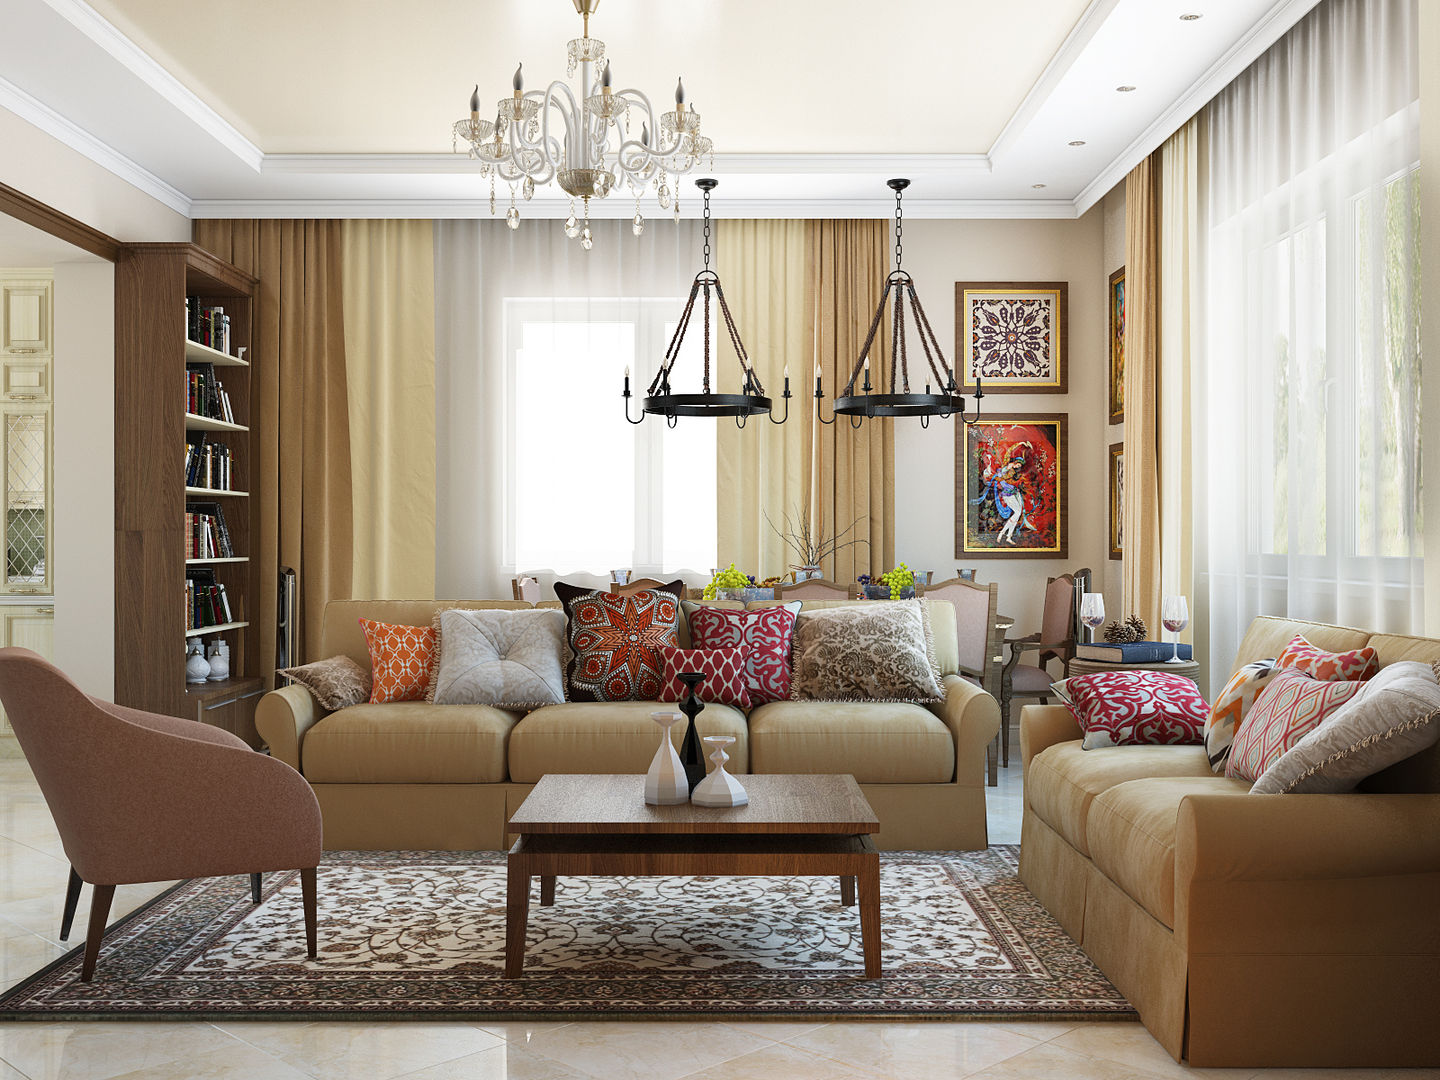 Классический интерьер с элементами ориентал и красивыми десткими, Tatiana Zaitseva Design Studio Tatiana Zaitseva Design Studio Living room